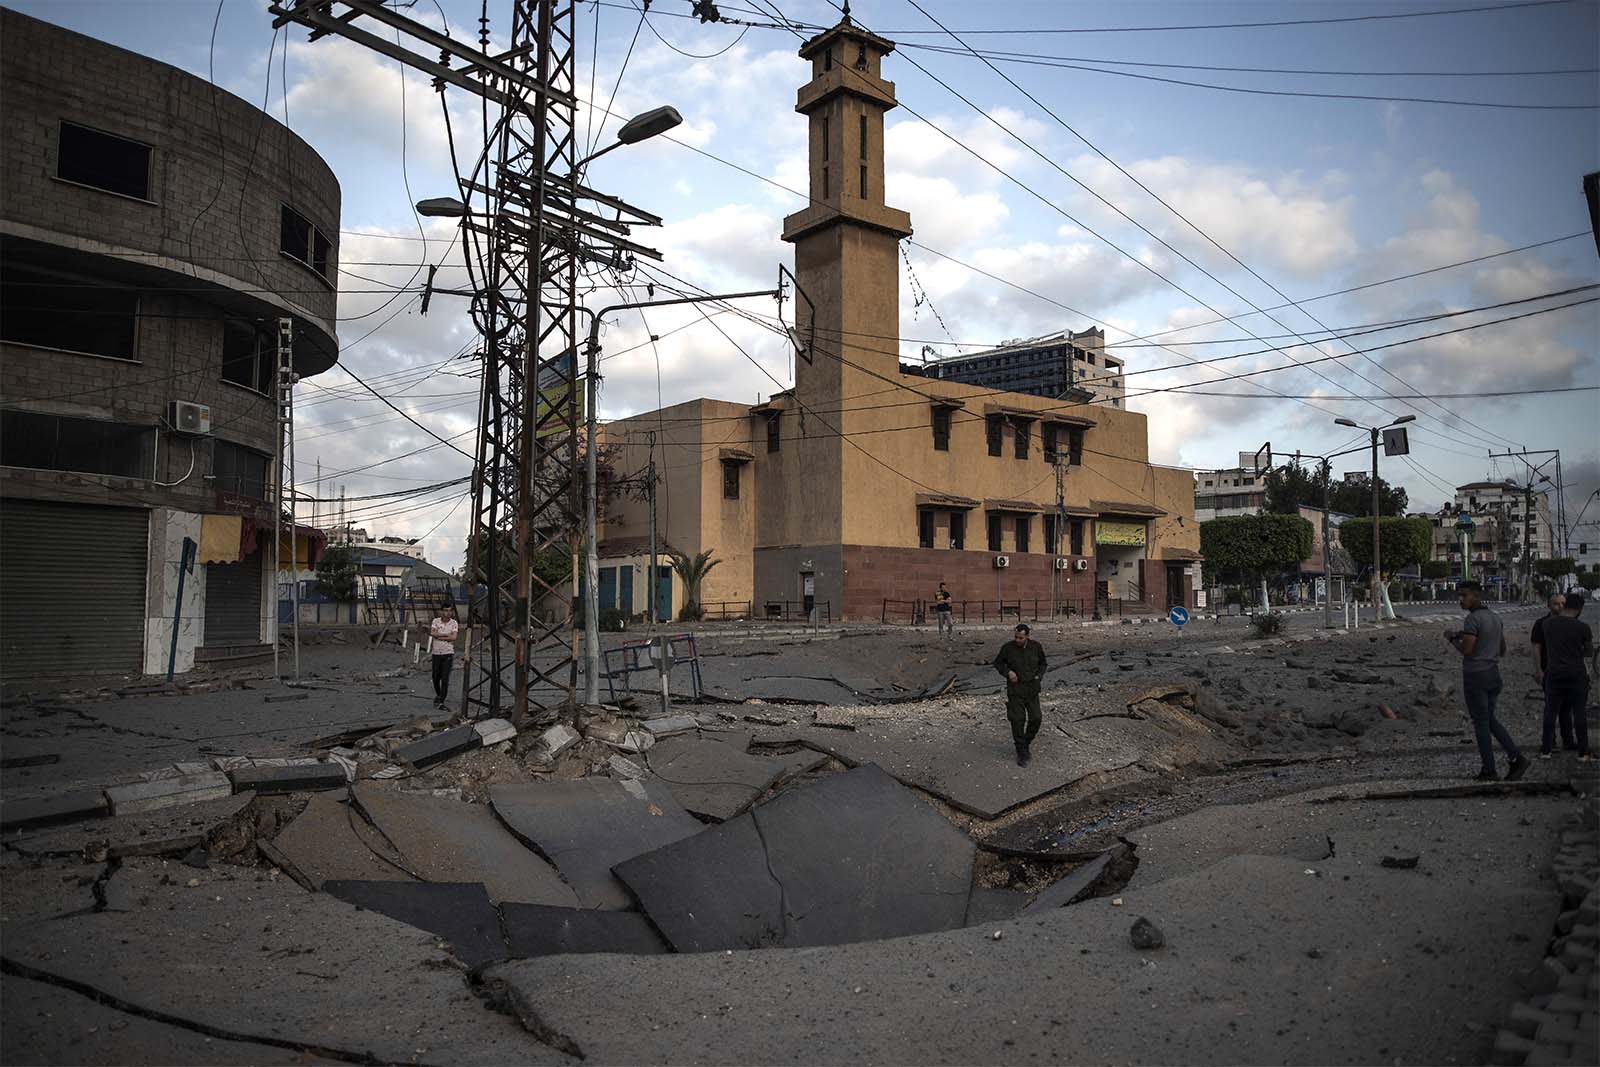 כביש שהתמוטט לתוך ה"מטרו" של החמאס לאחר תקיפה של חיל האוויר. ""עדיין לא ברורה מידת הפגיעה ב'מטרו' וכמה לוחמי חמאס נהרגו" (צילום: AP Photo/Khalil Hamra)